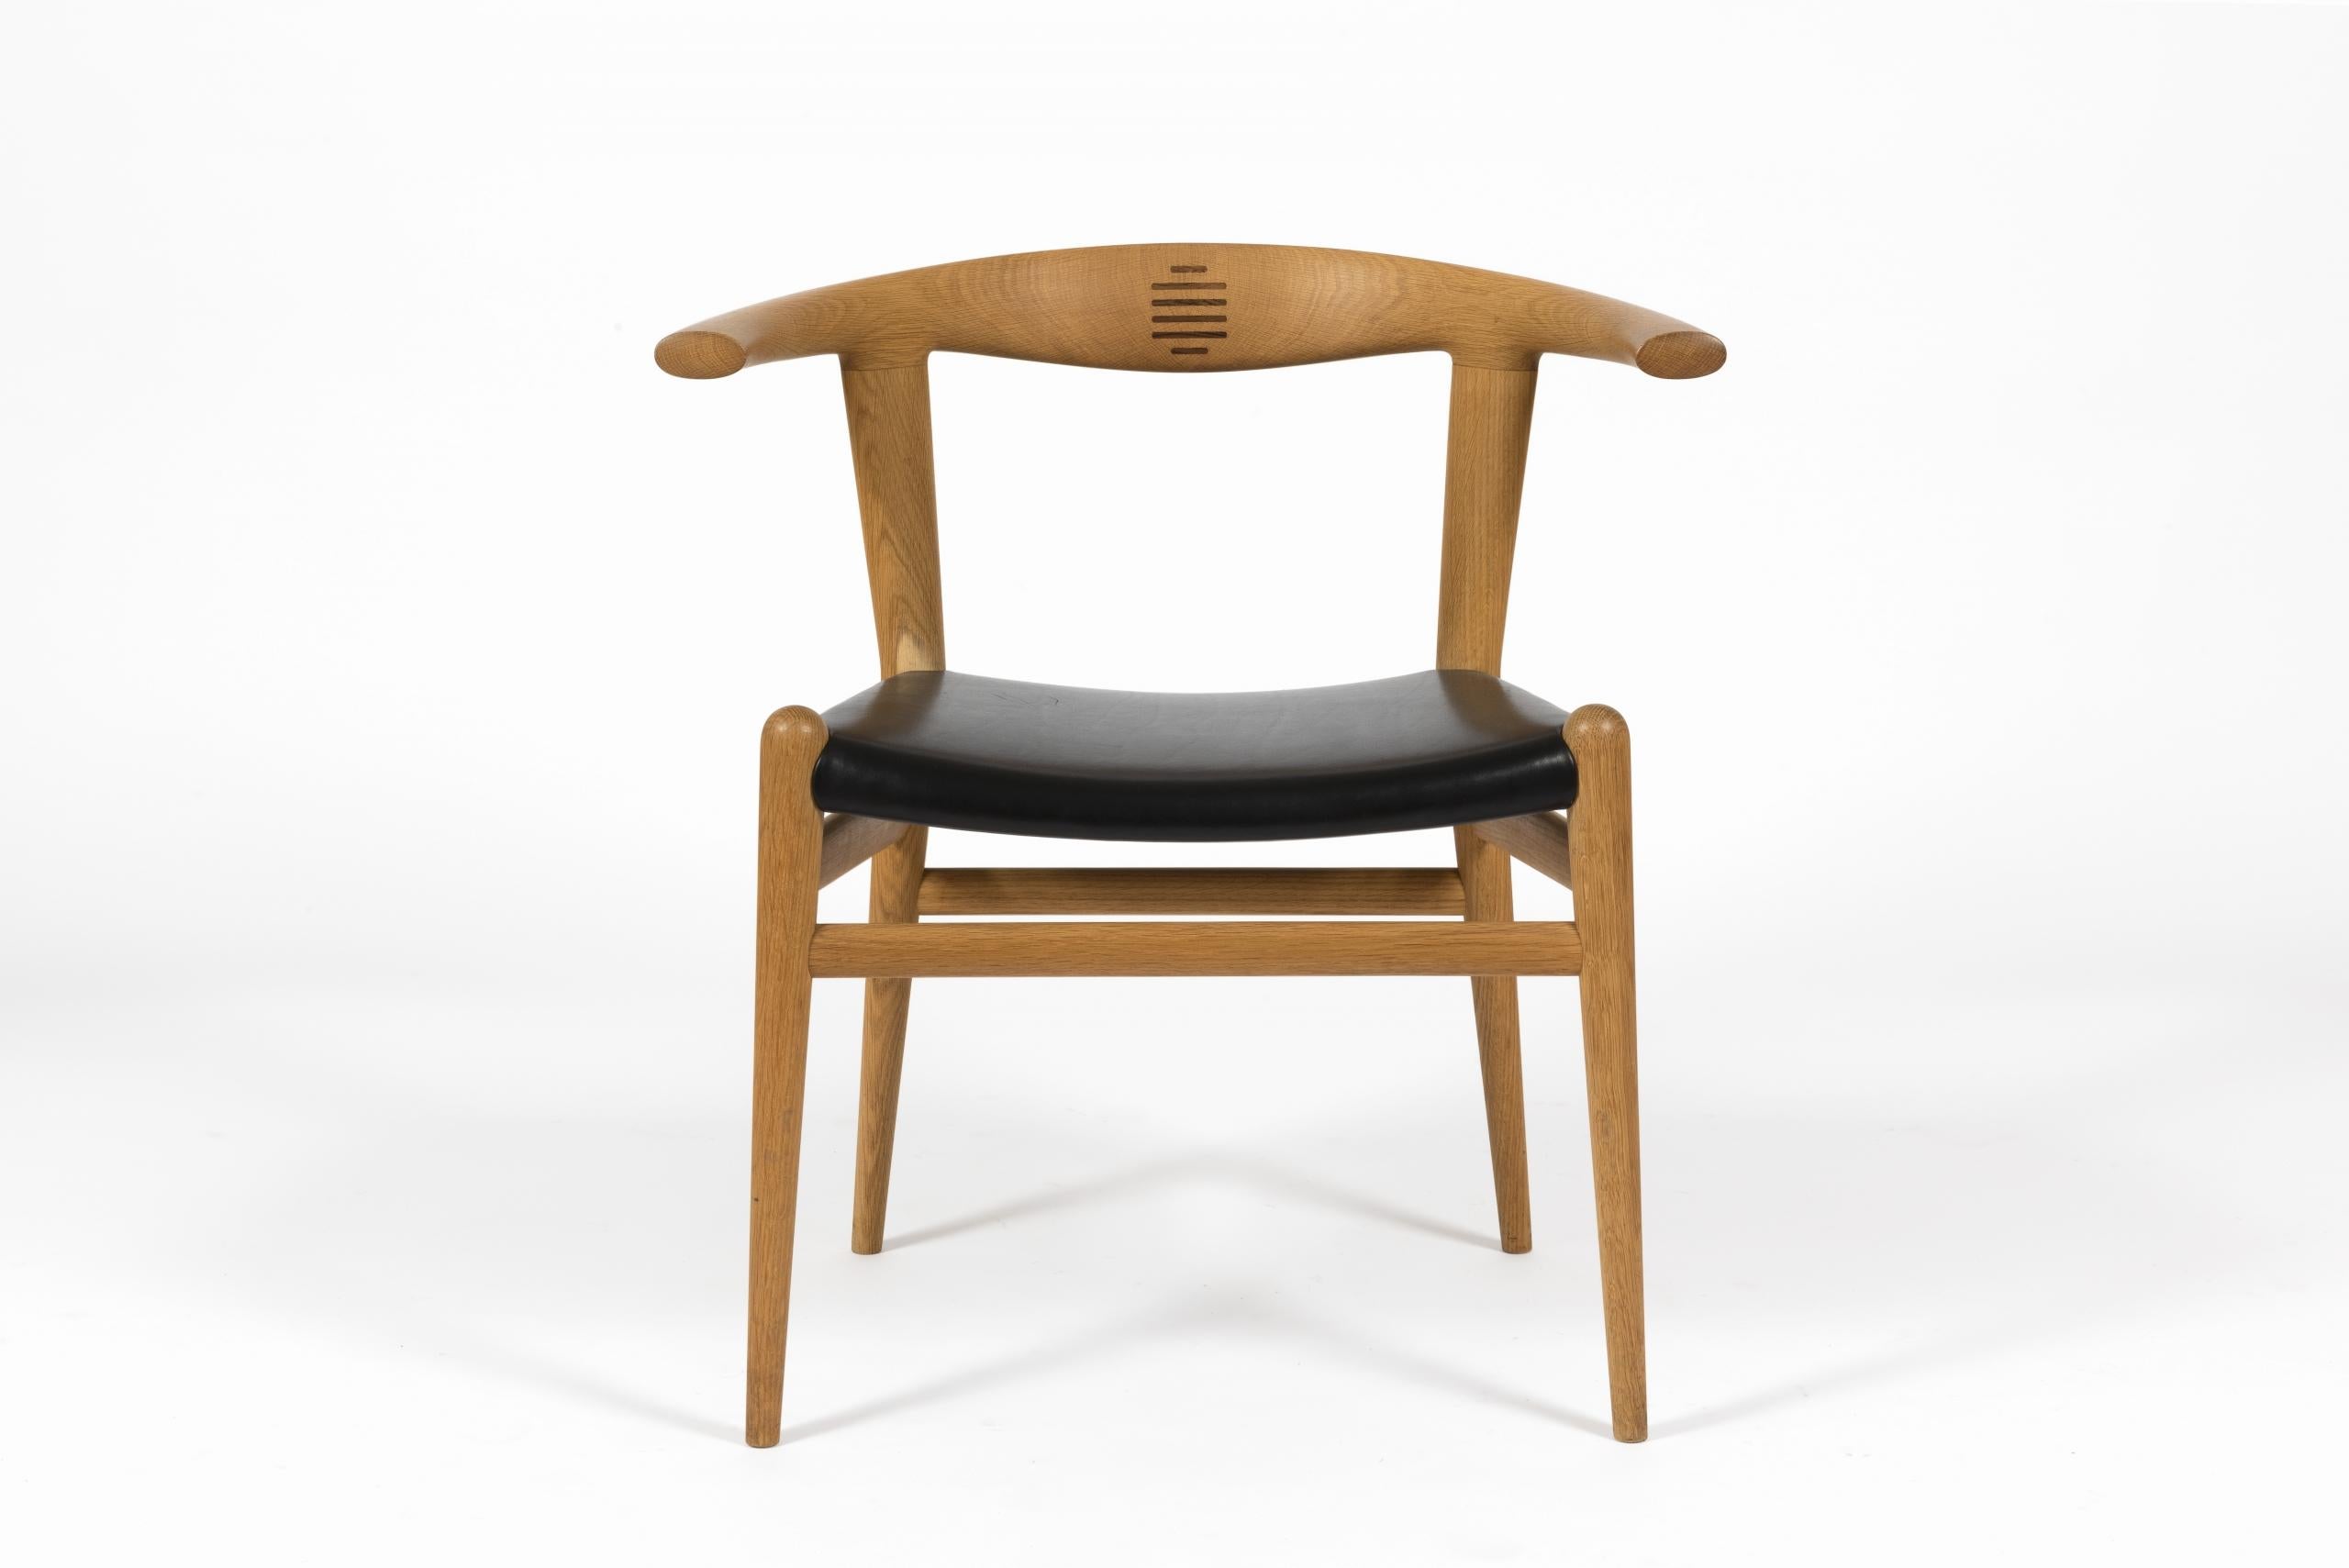 Paar Liegestühle 'Bull Chair', Modell PP-518 von Hans J. Wegner für PP Møbler, 1961.

Struktur aus Massivholz mit Inkrustation auf dem Dossier aus Palissandre und schwarzem Lederüberzug.